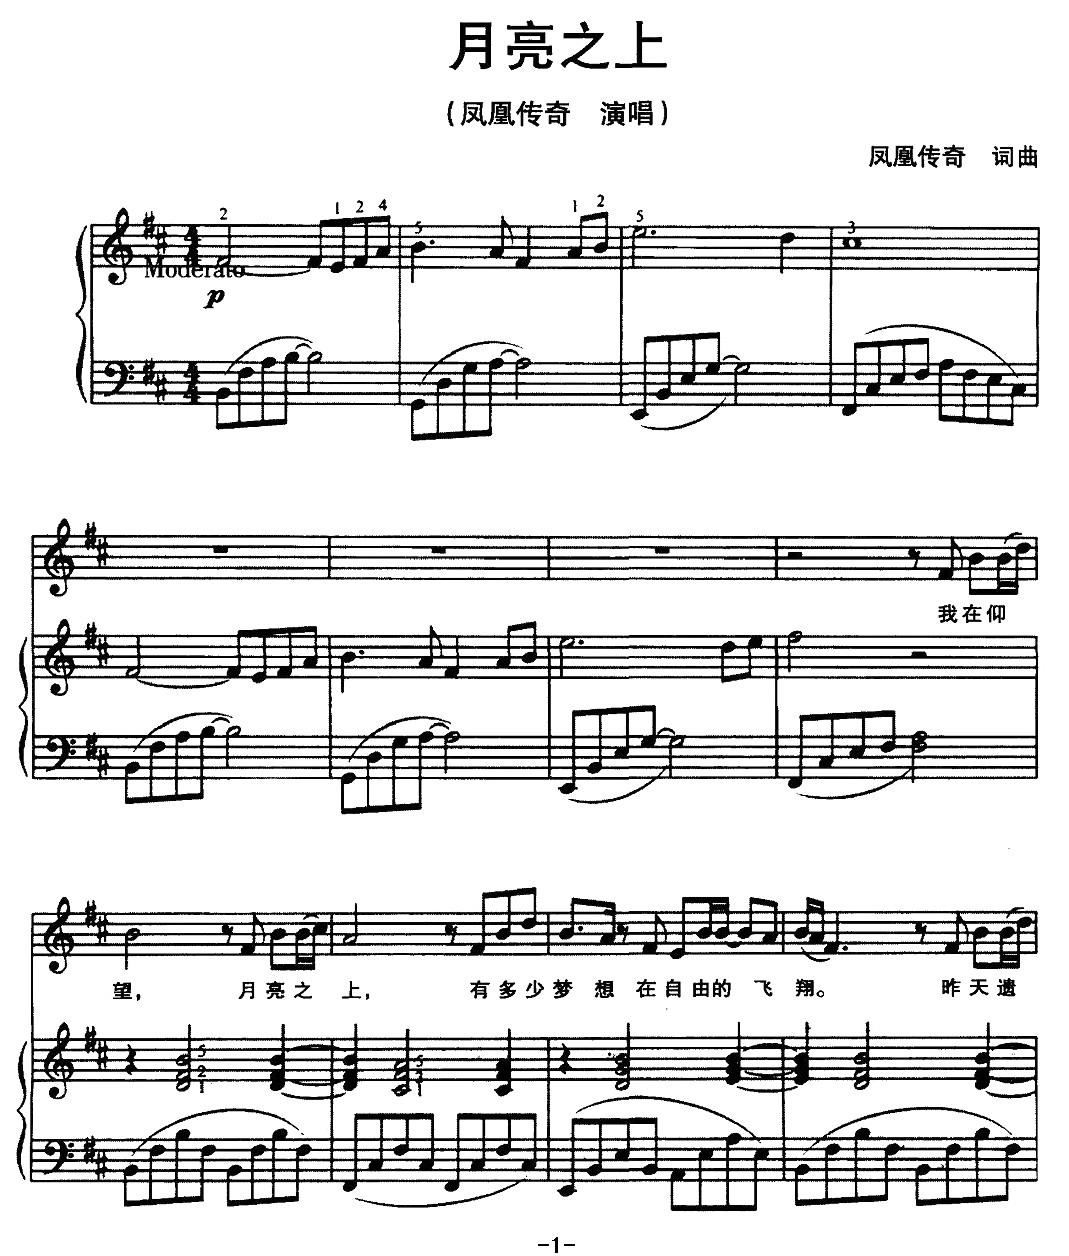 ★ 鄧麗君-月亮代表我的心 琴譜pdf-香港流行鋼琴協會琴譜下載 ★